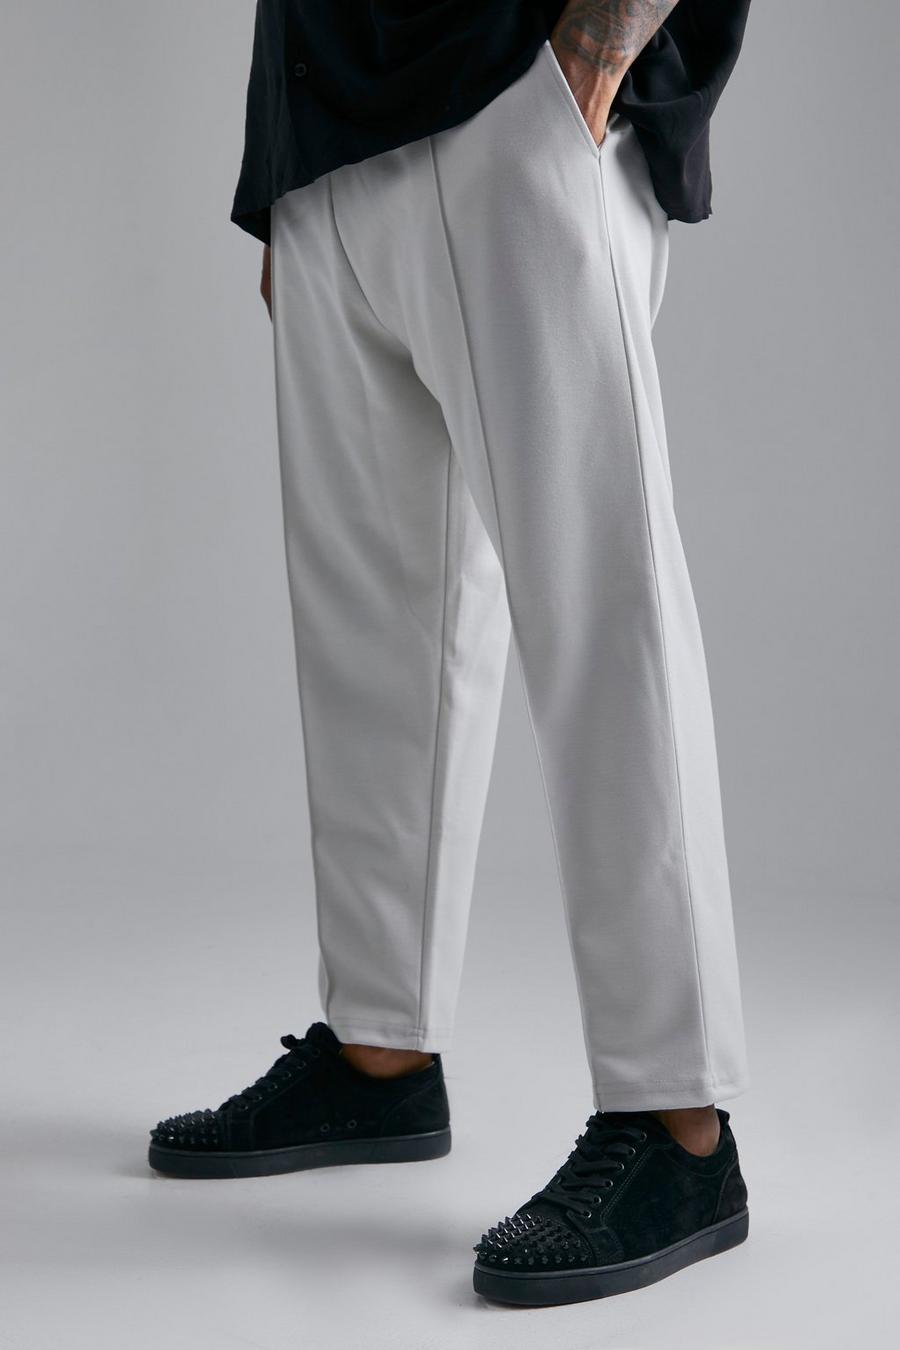 Pantalón deportivo Plus pesquero ajustado con alforza, Dark grey image number 1